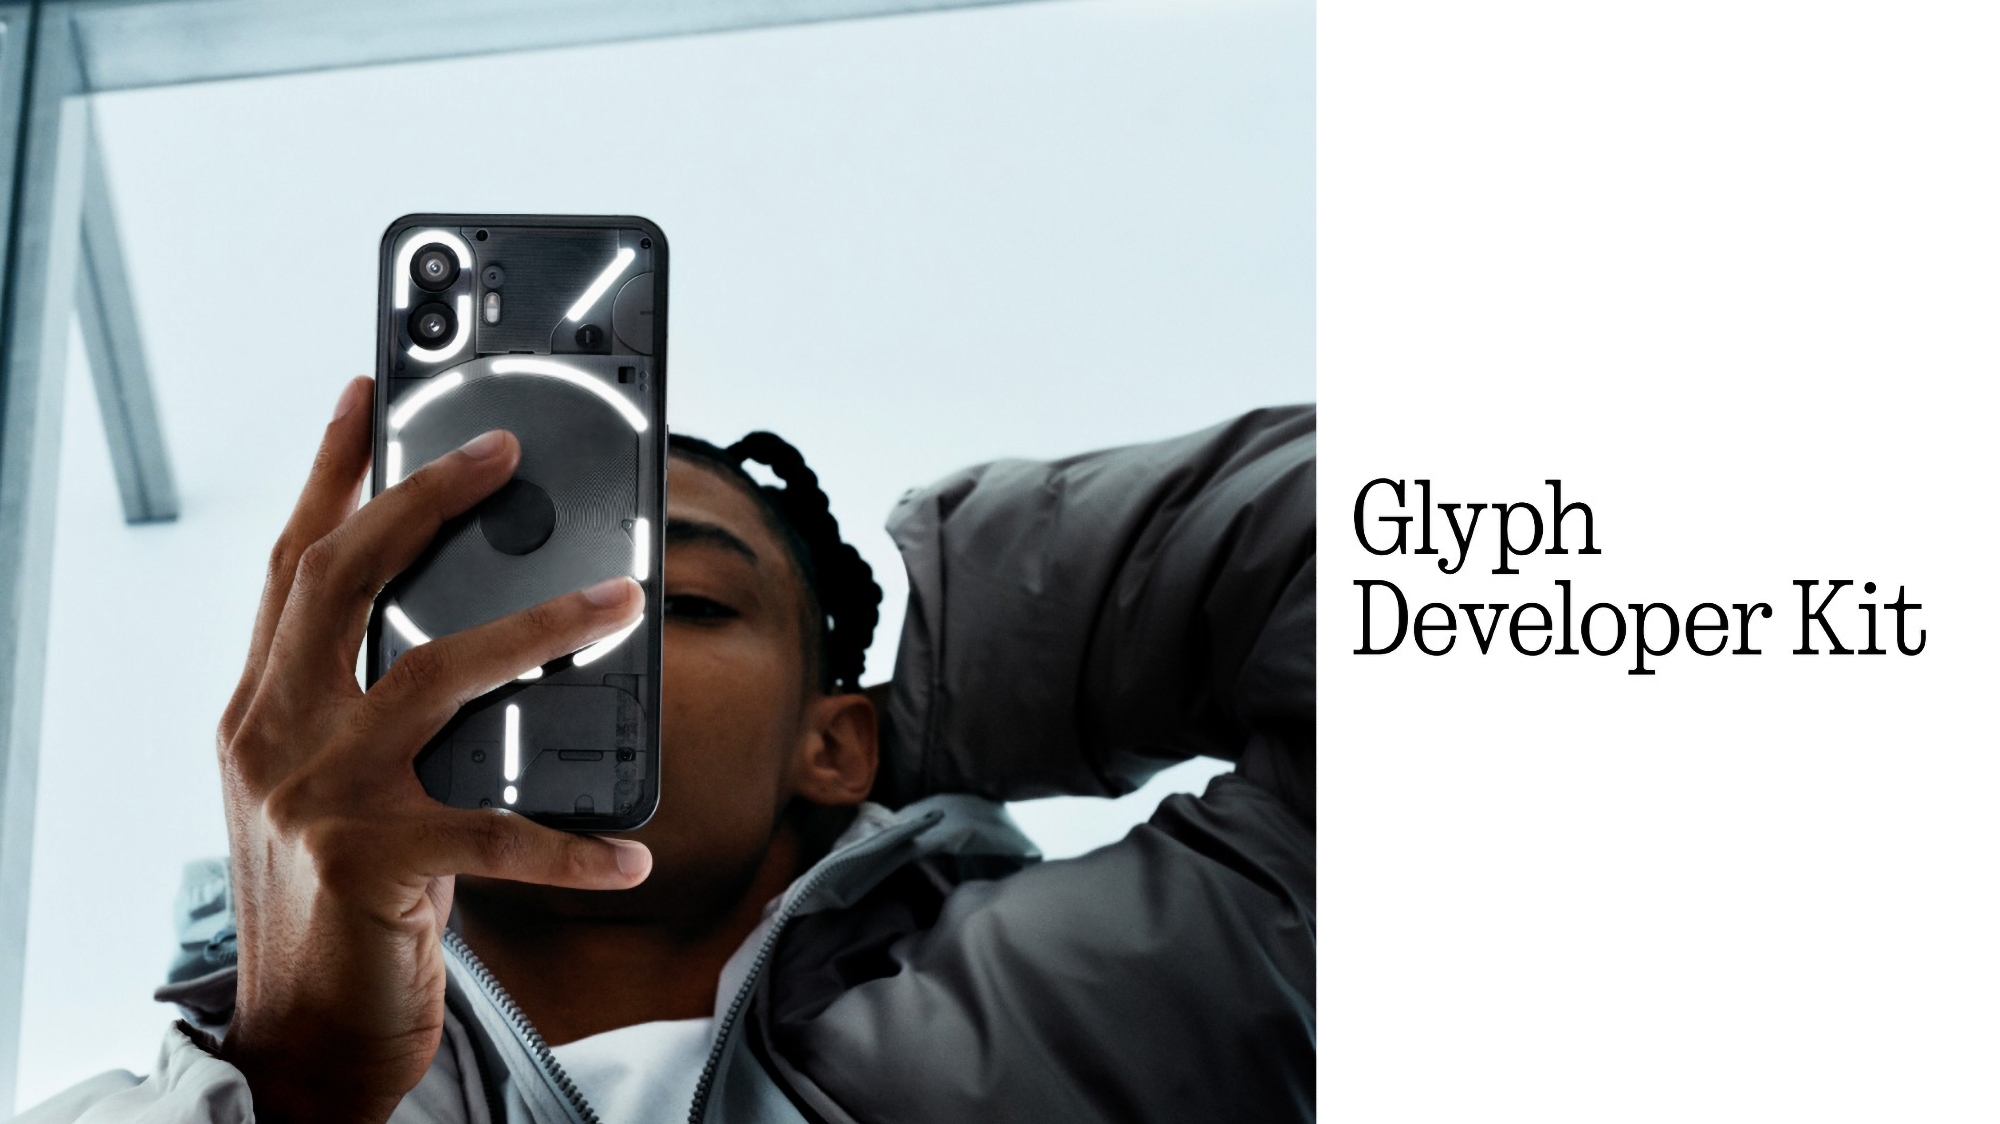 Rien n'a annoncé le kit de développement Glyph pour les développeurs d'applications.